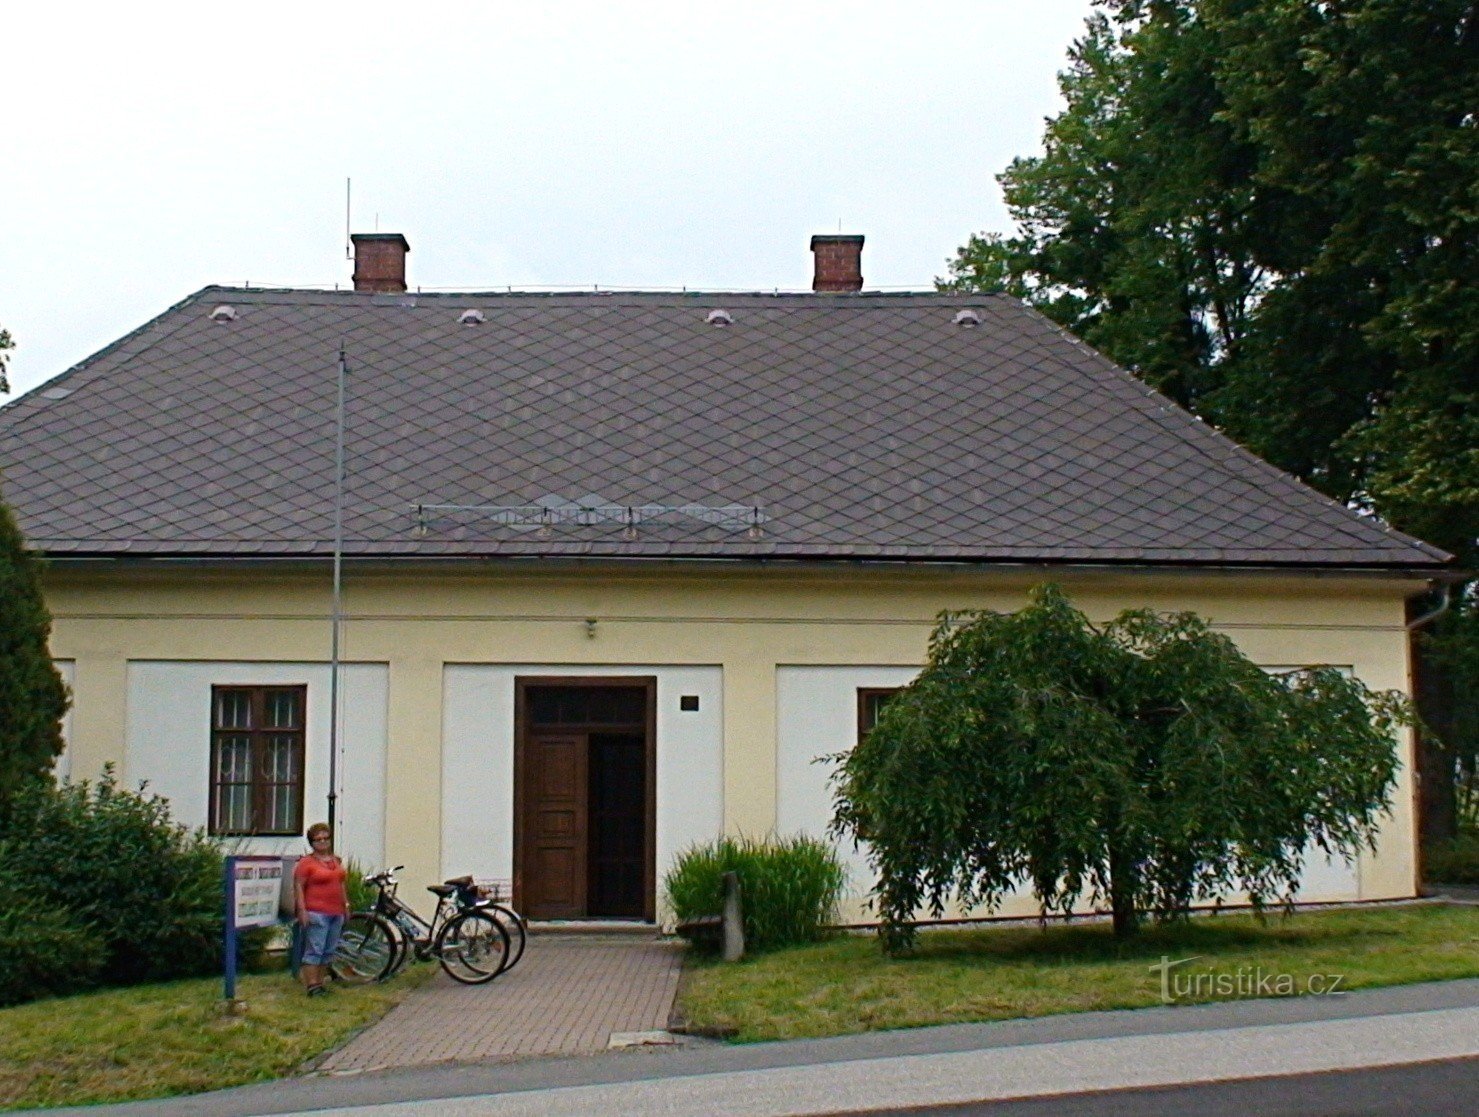 Tehnički muzej Petřvald u bivšem župnom dvoru